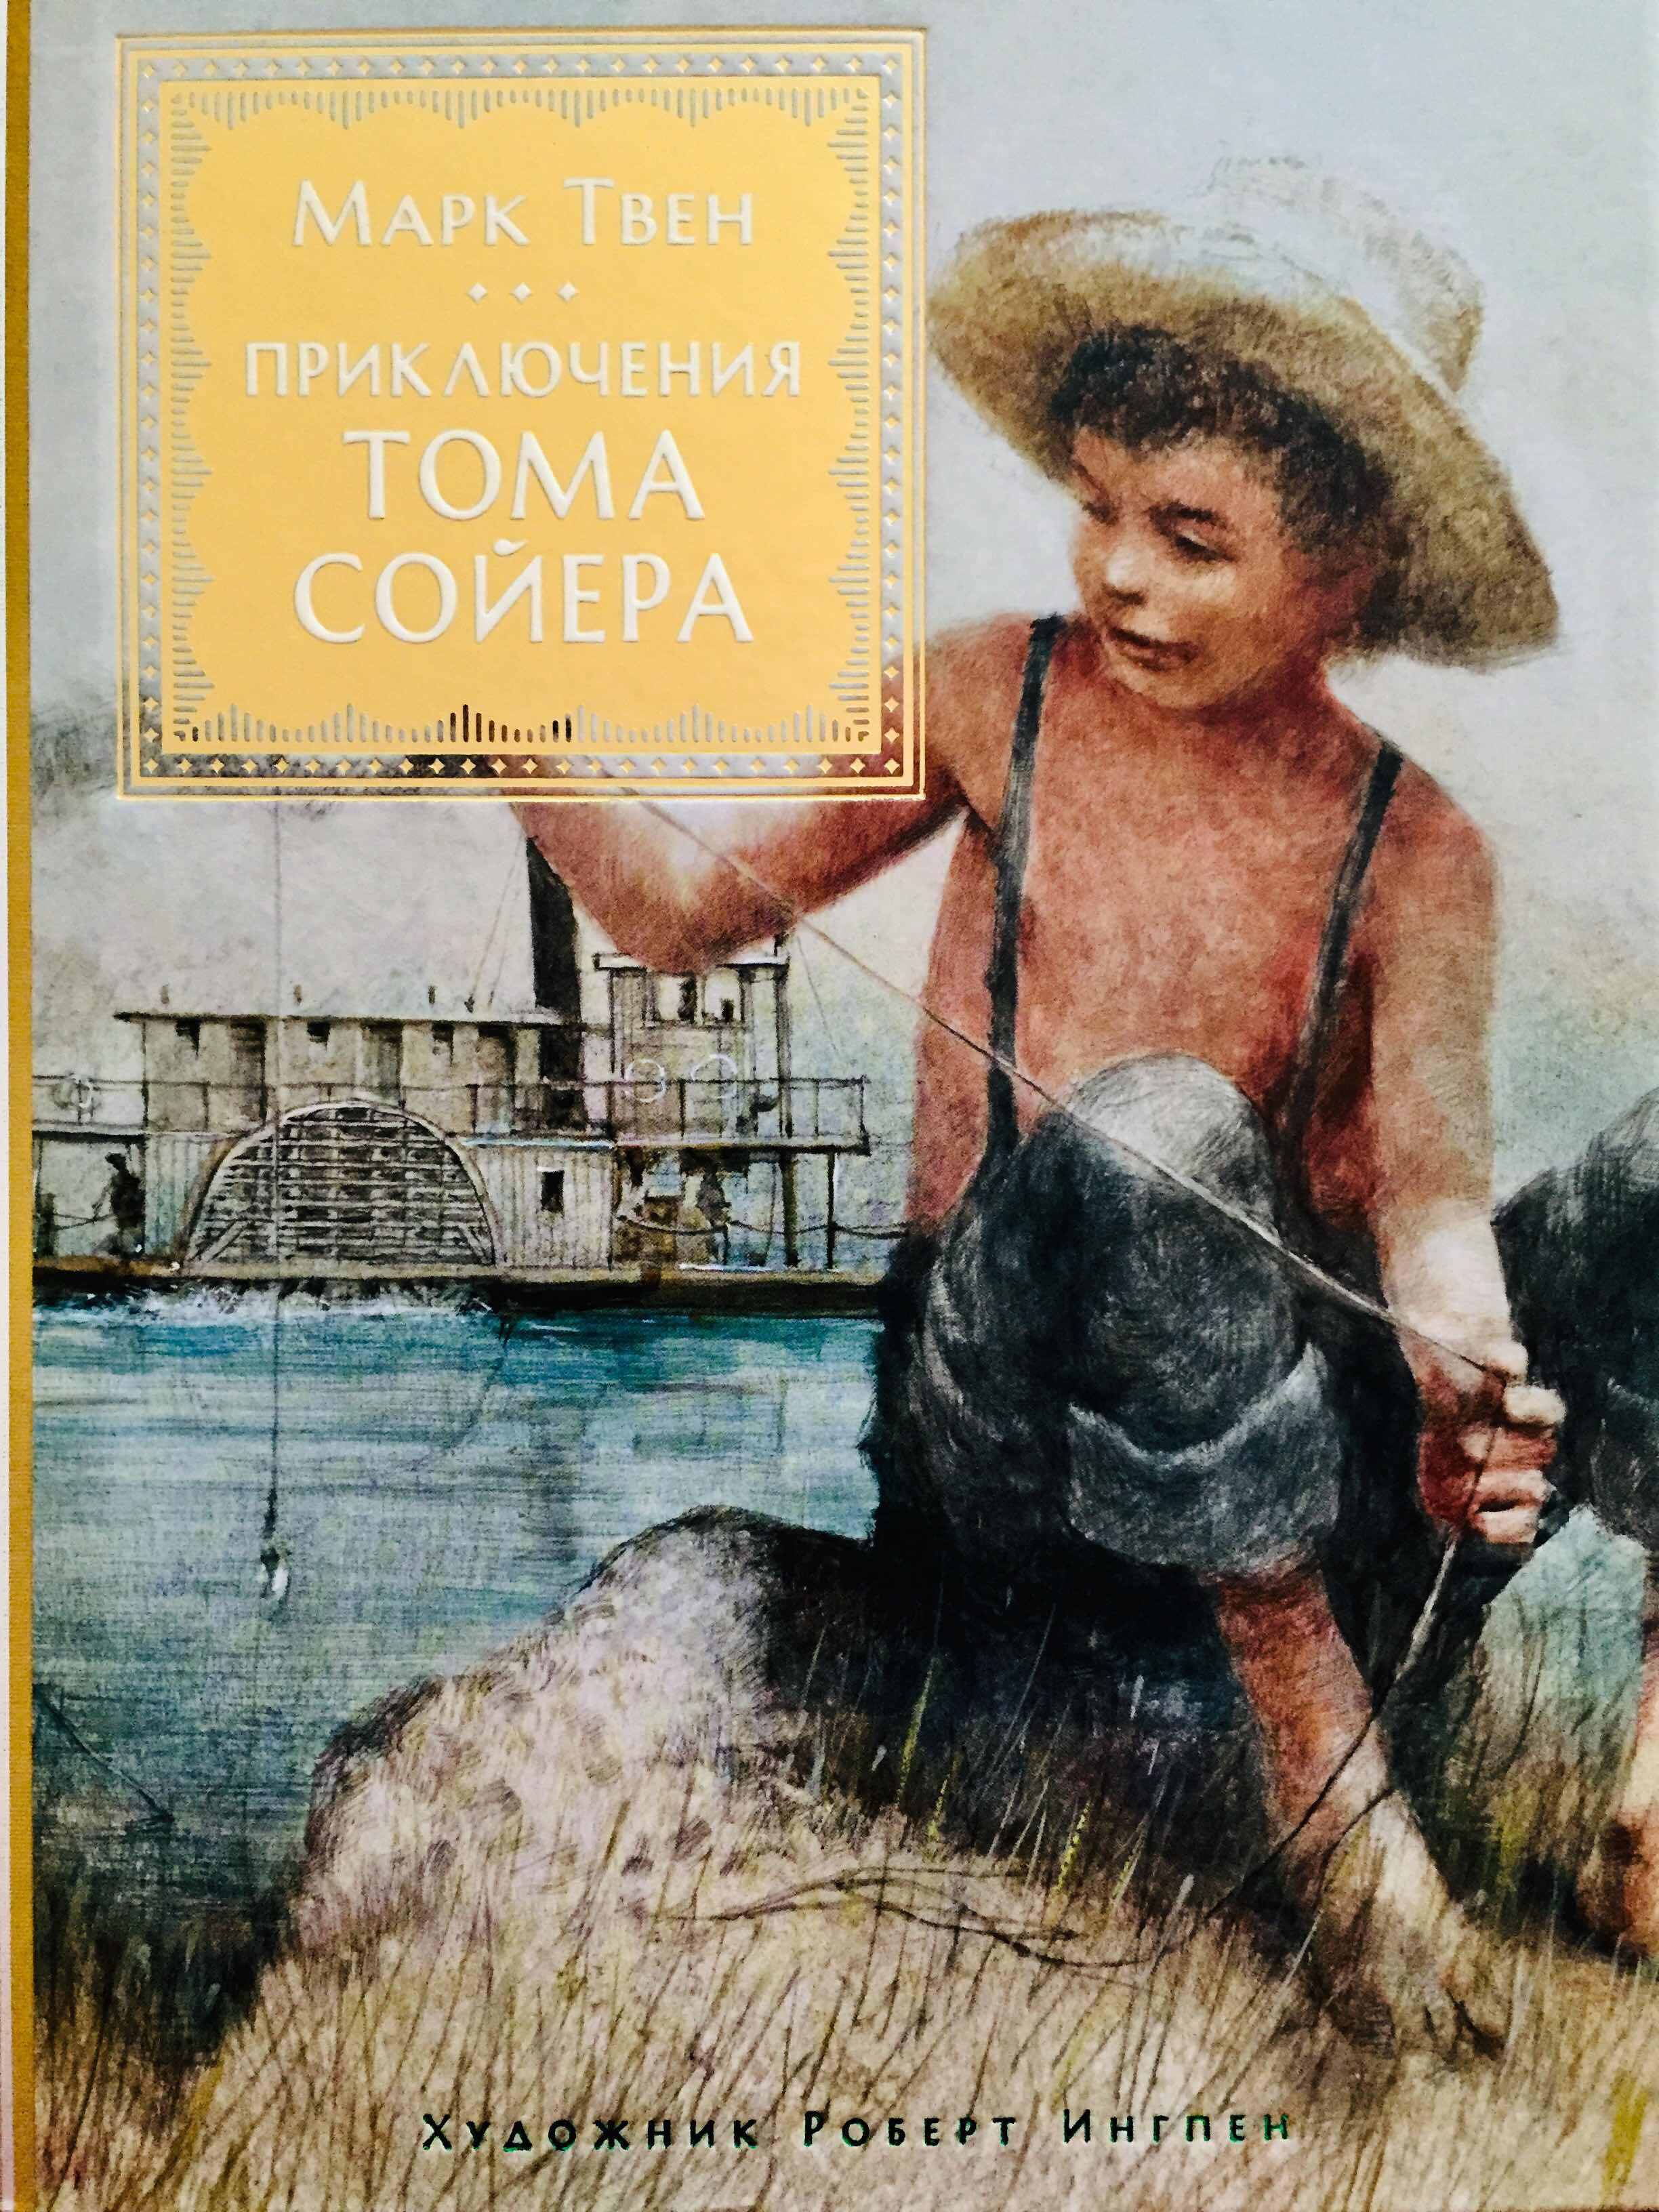 Приключения о томе сойере. Том Сойер обложка книги.